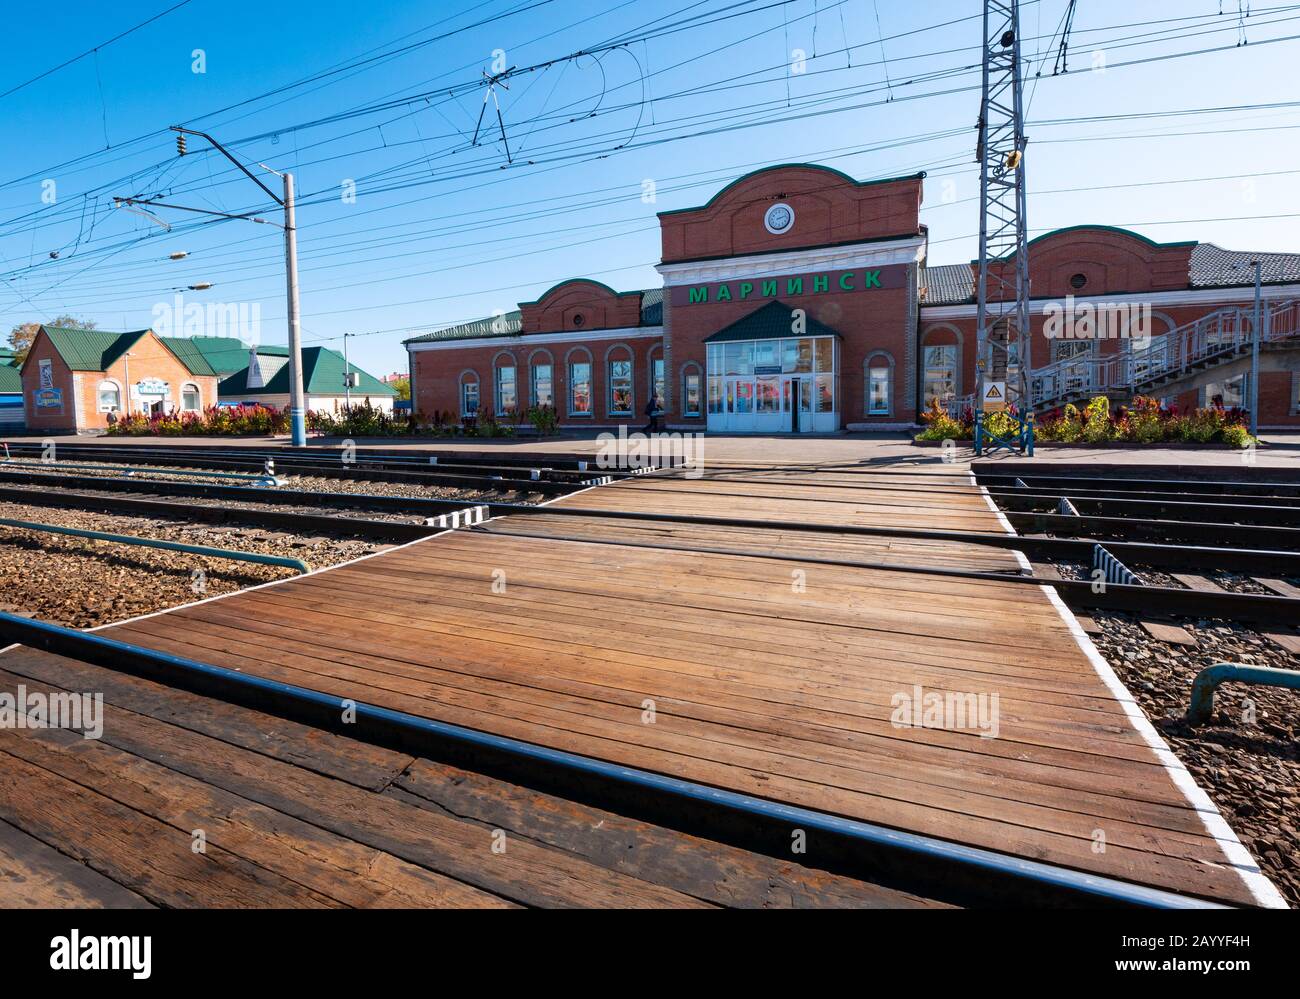 Costruzione della stazione ferroviaria di Marlinsk, Ferrovia Trans-Siberiana, Siberia, Federazione russa Foto Stock